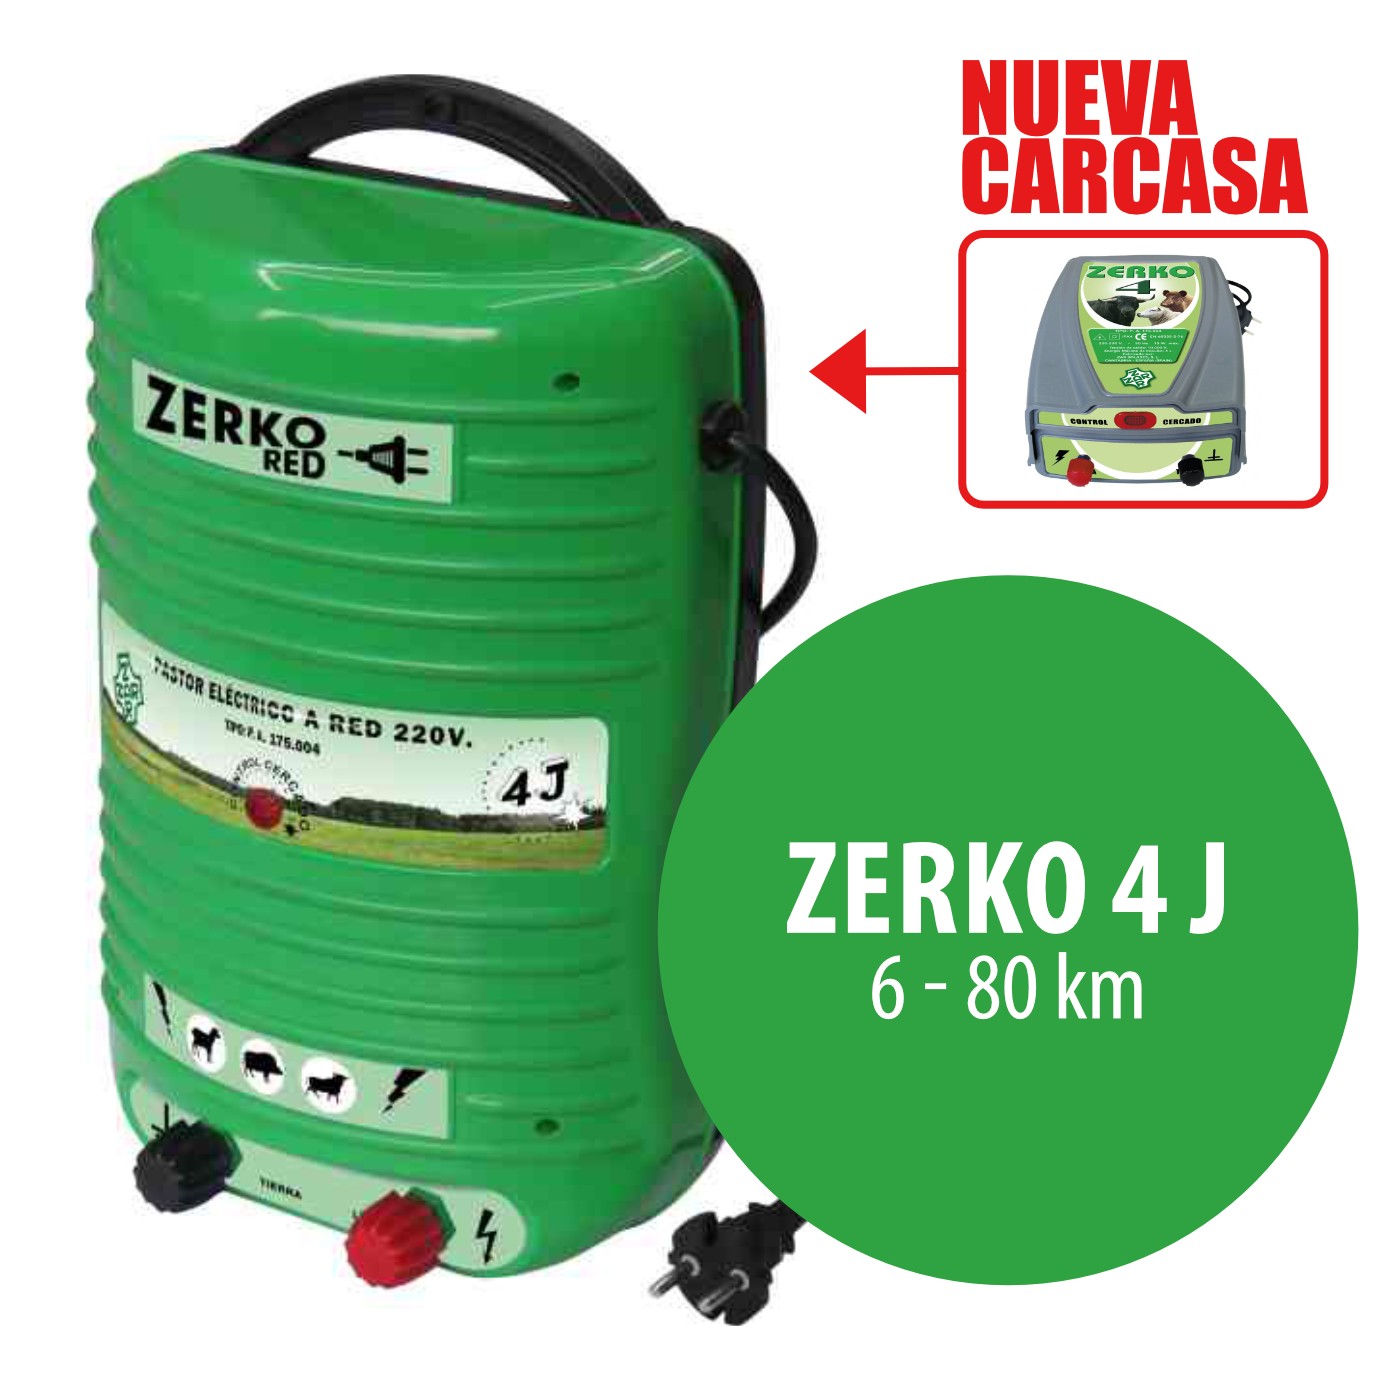 Pastor eléctrico ZAR Zerko-Red 4 J 220-230 V - Suministros Urquiza